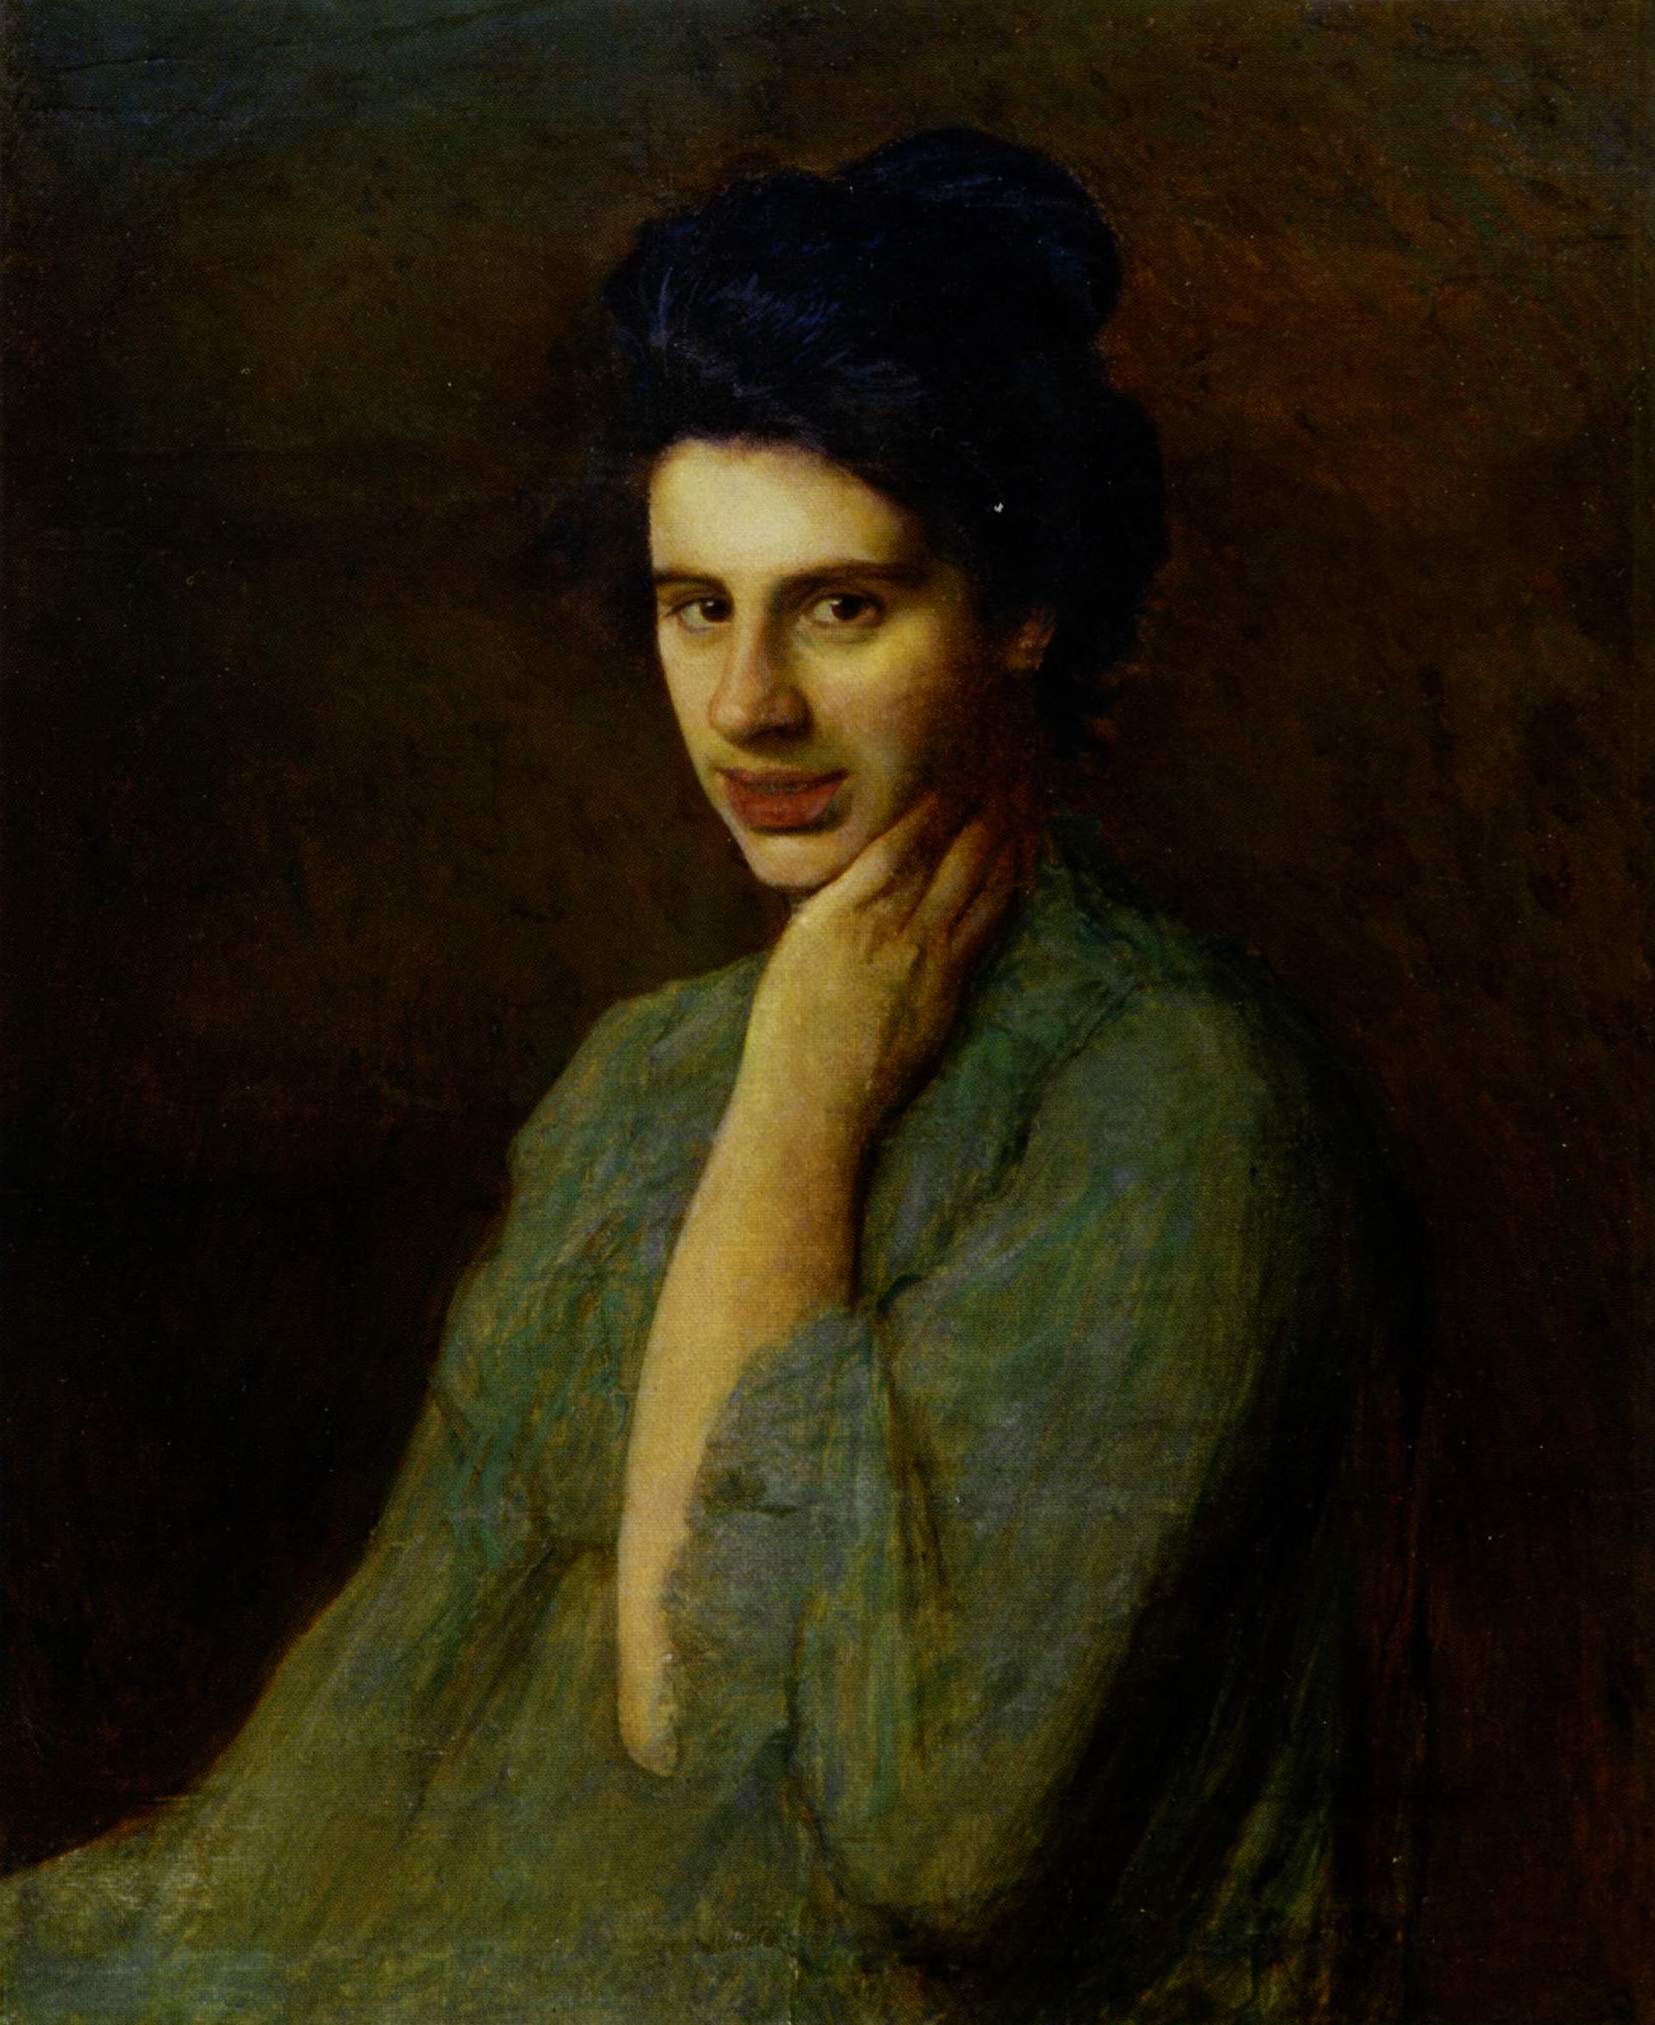 Труш. Портрет А.М. Труш-Драгомановой, жены художника. 1906